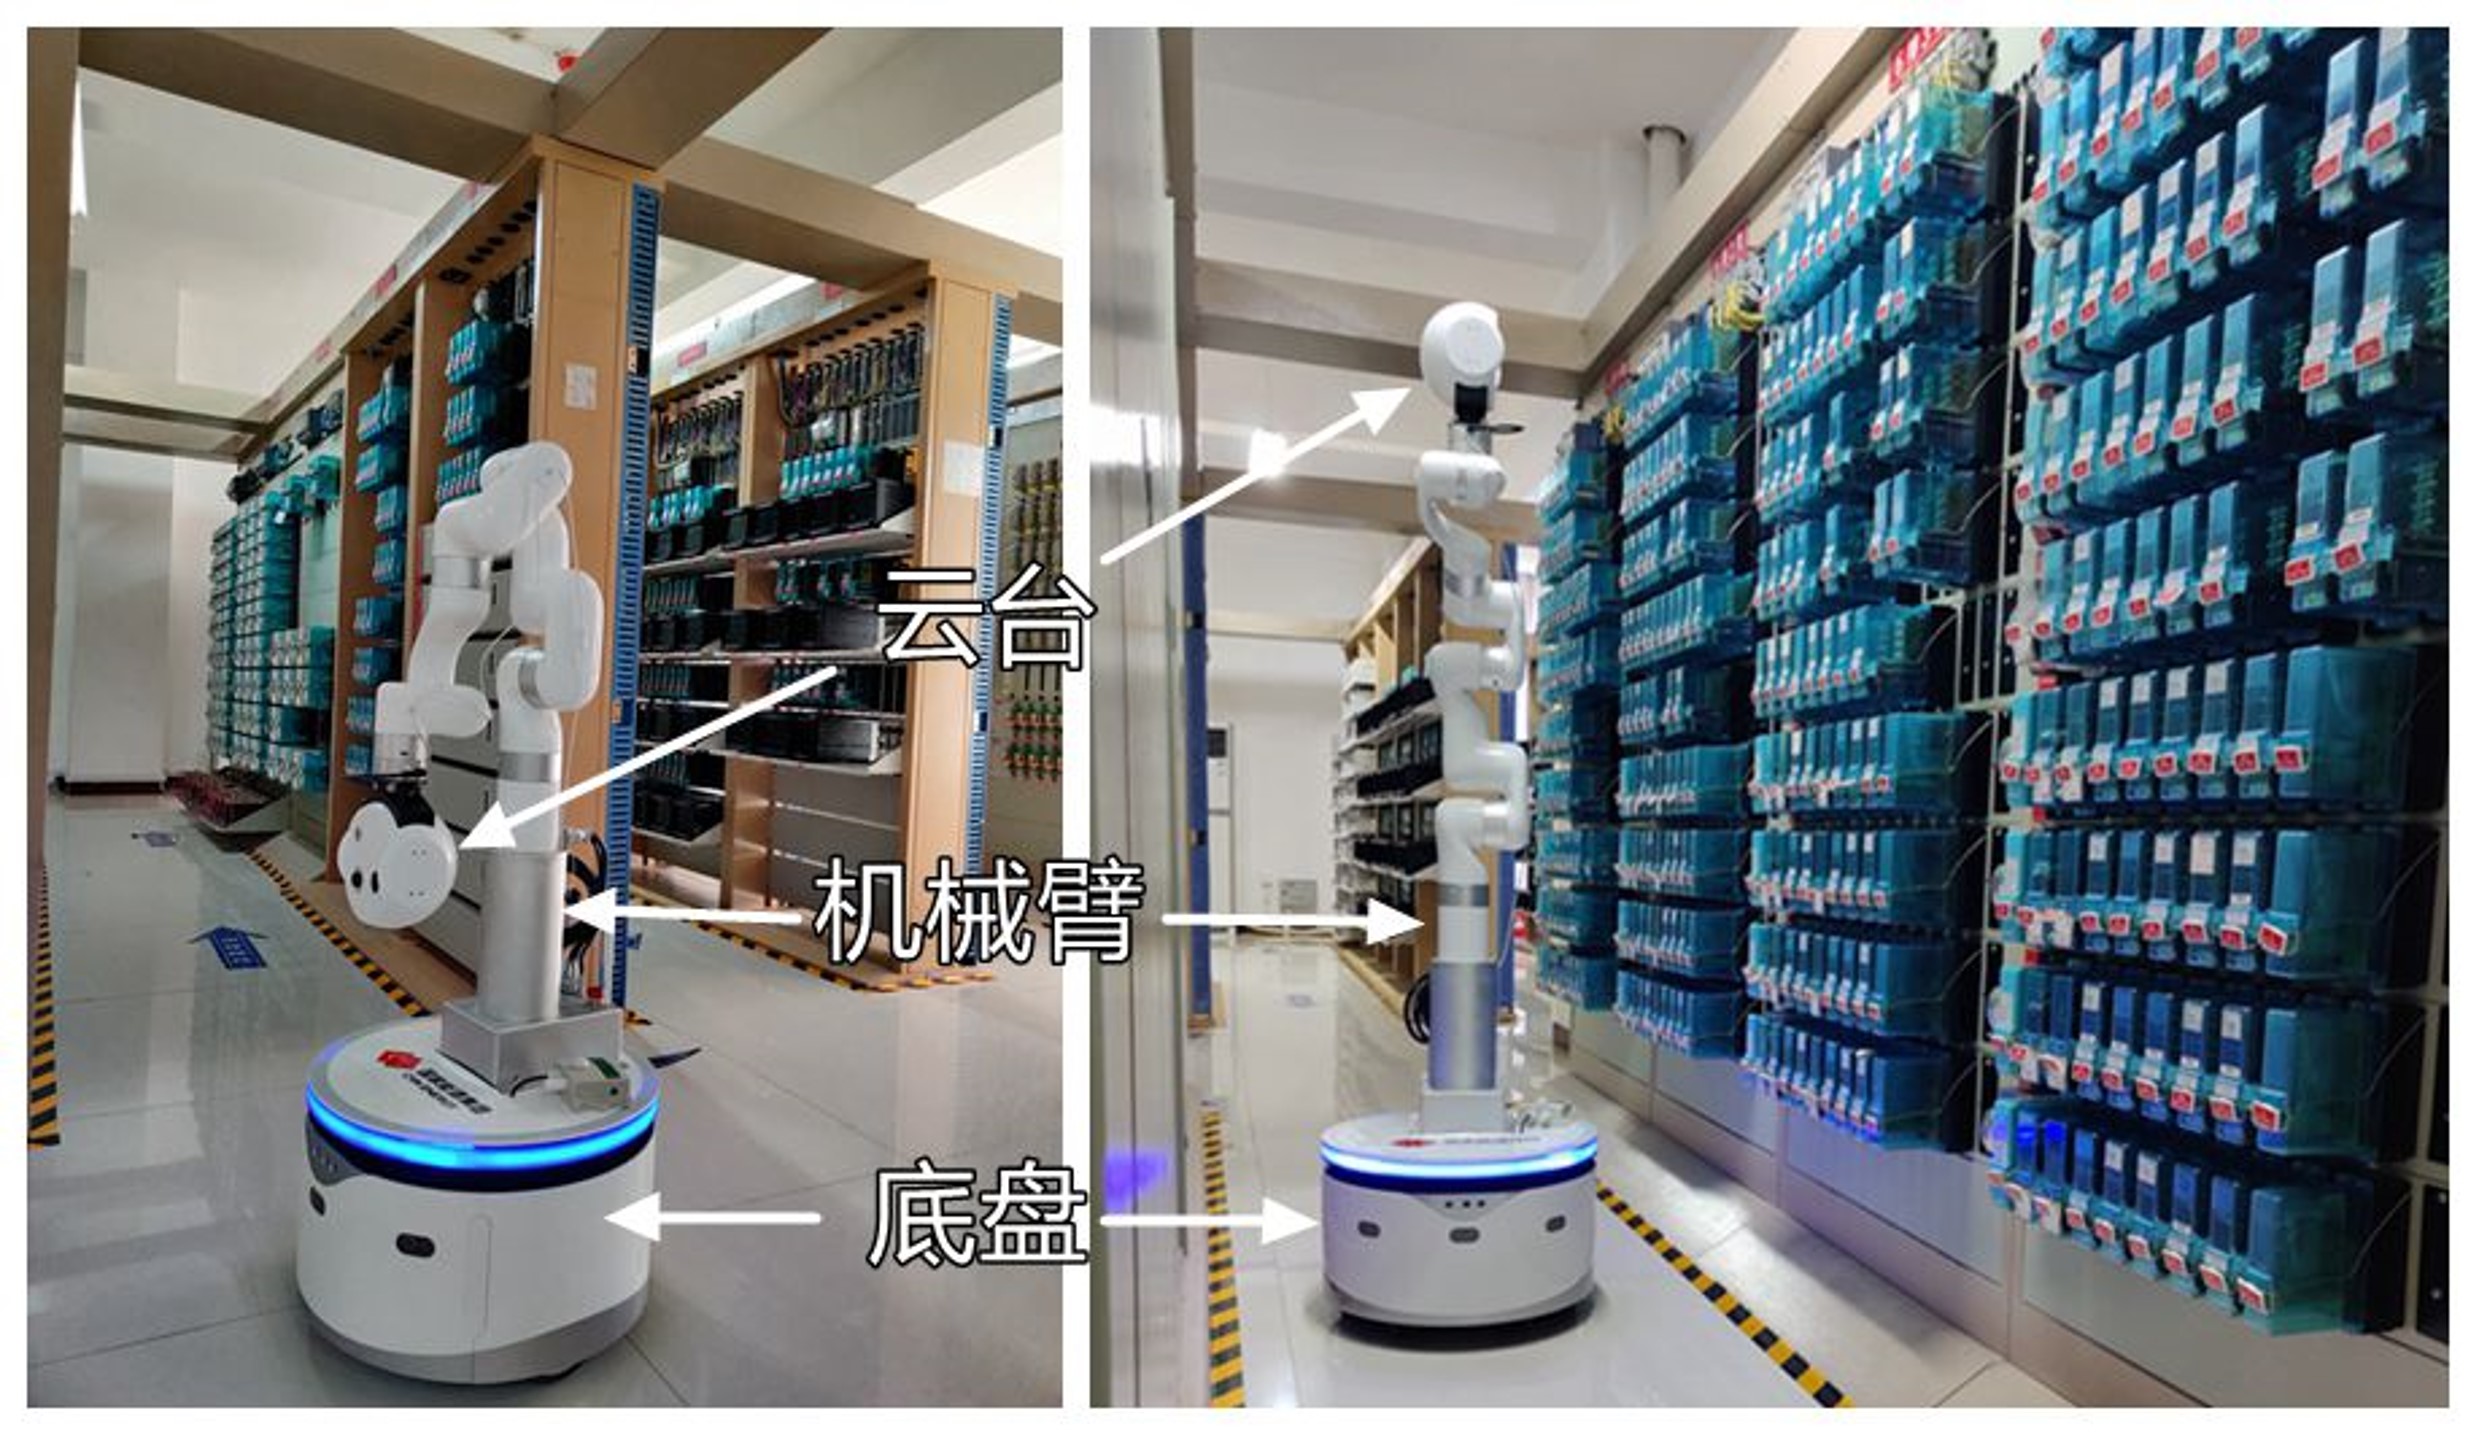 北京艾思科米智能巡检机器人和辅助值班机器人、智能讲解机器人_机器人